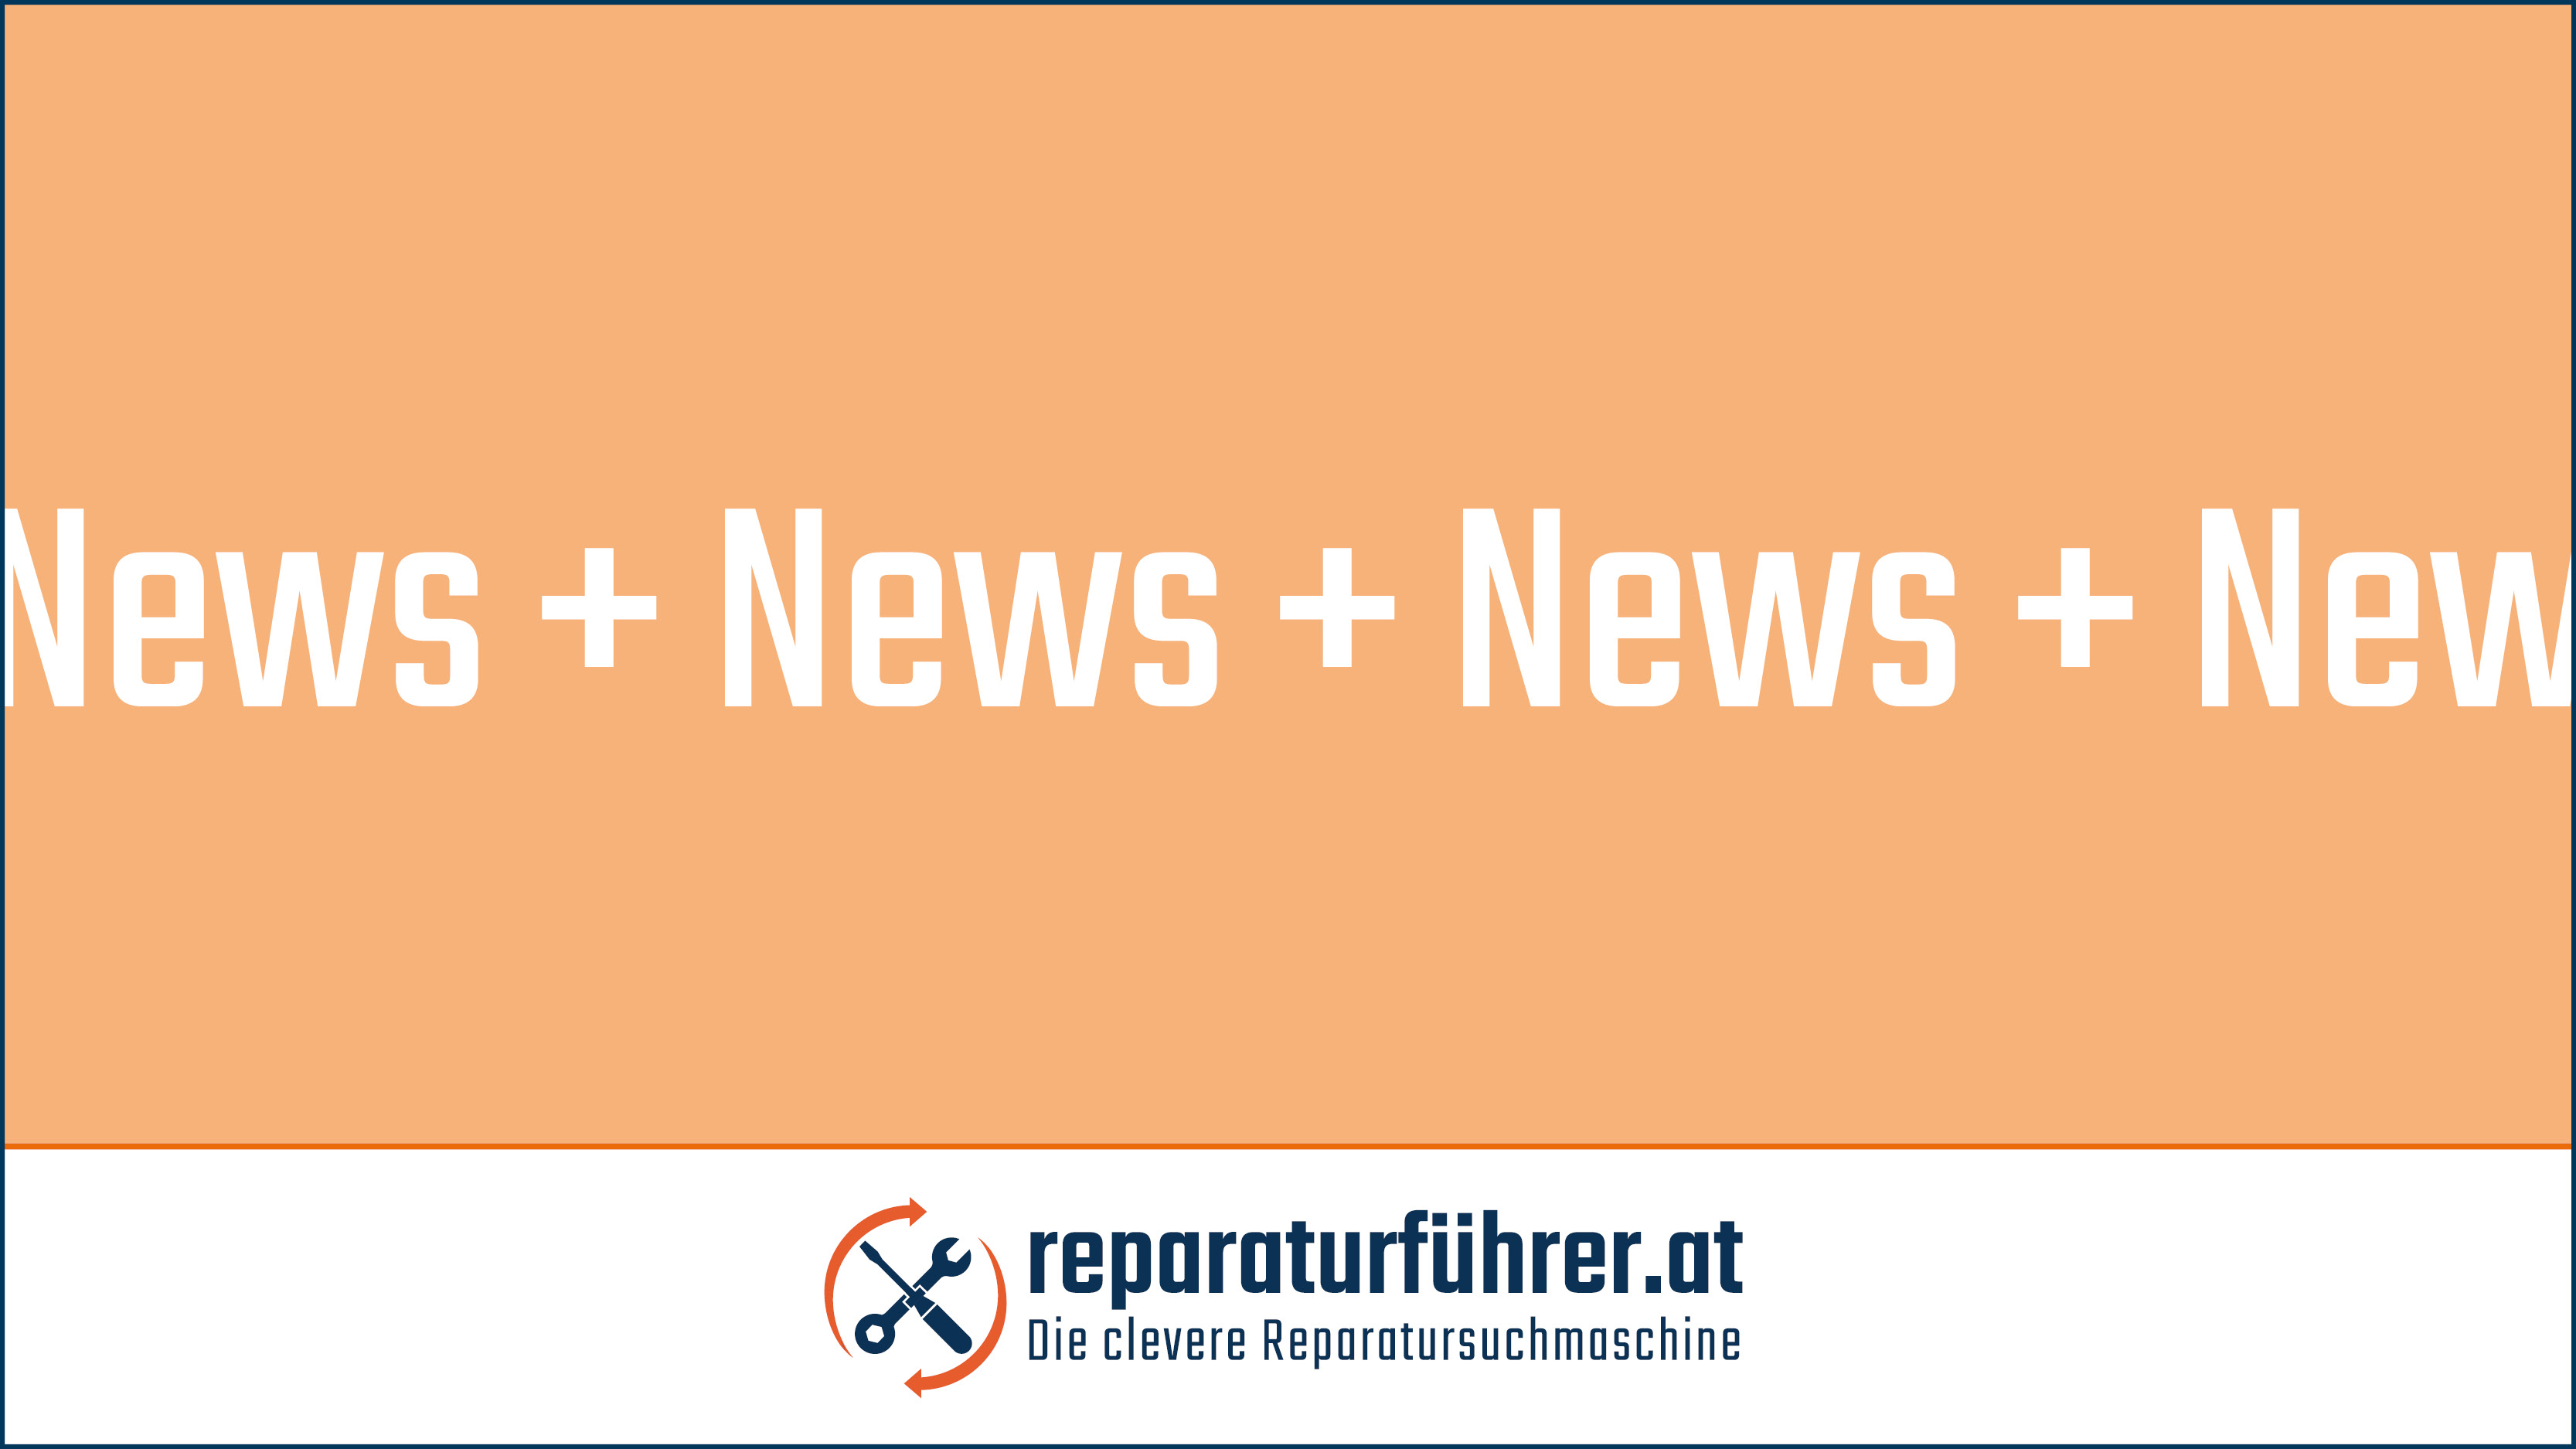 Reparaturbonus Österreich startet am 26. April 2022 - Reparaturbonus Kärnten endet am 25. April 2022